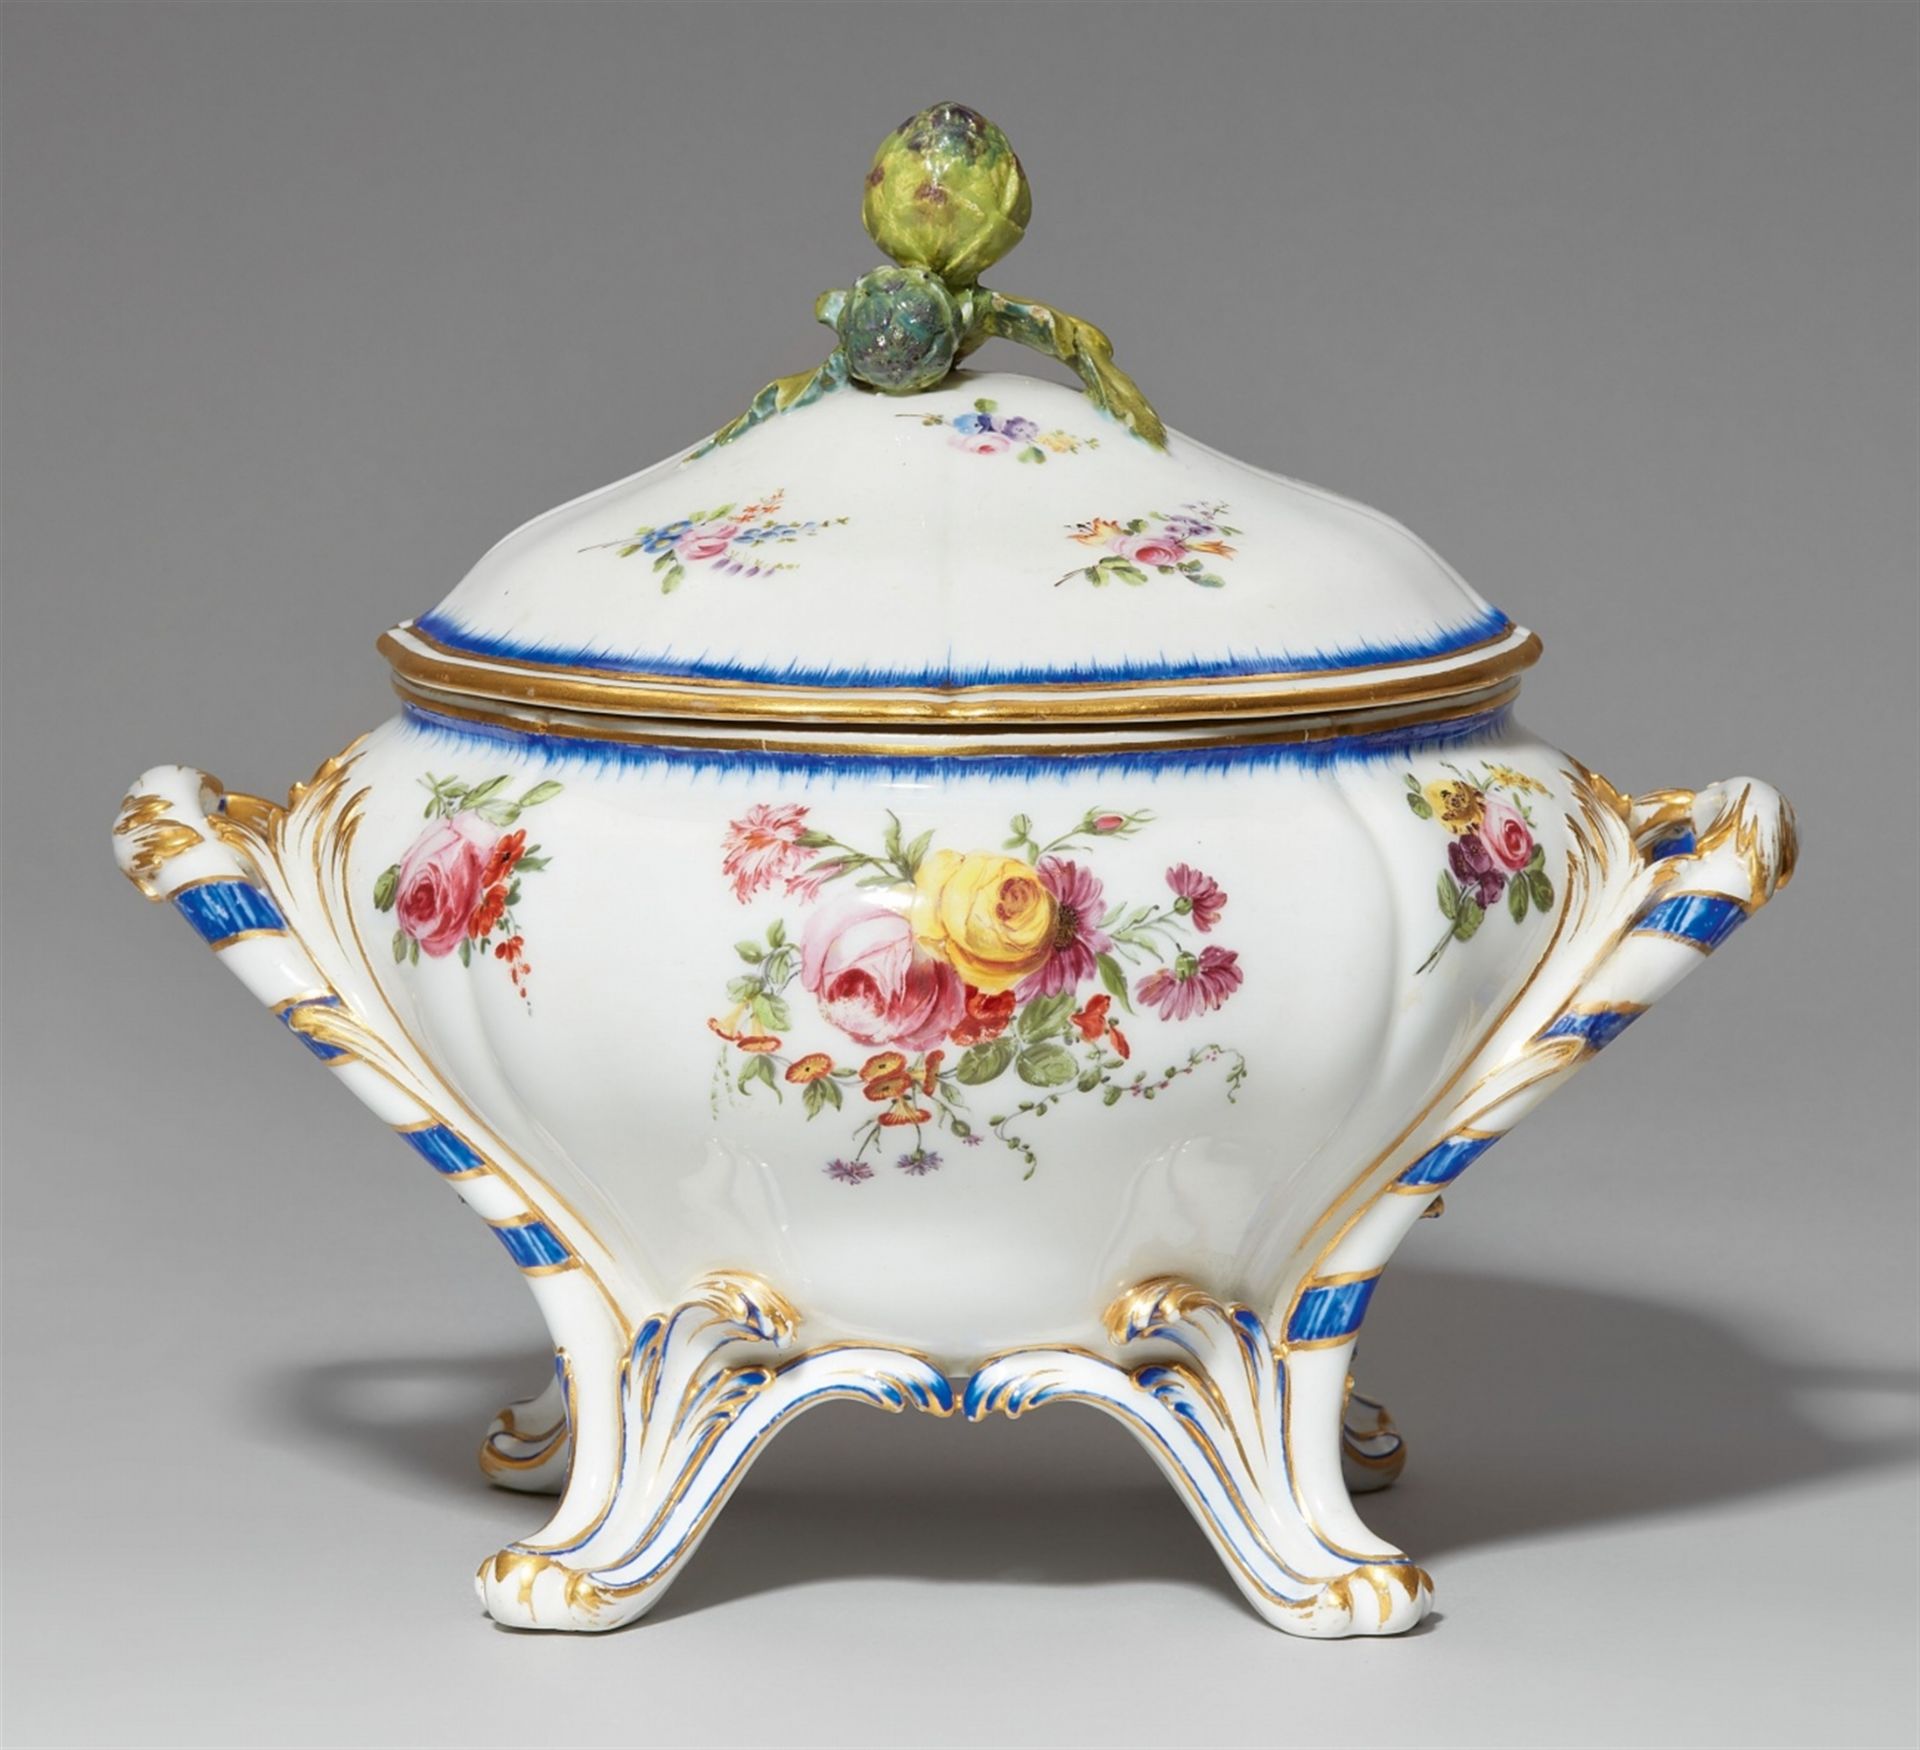 A Sèvres soft-paste porcelain “pot à oille” tureen from a service with bouquets